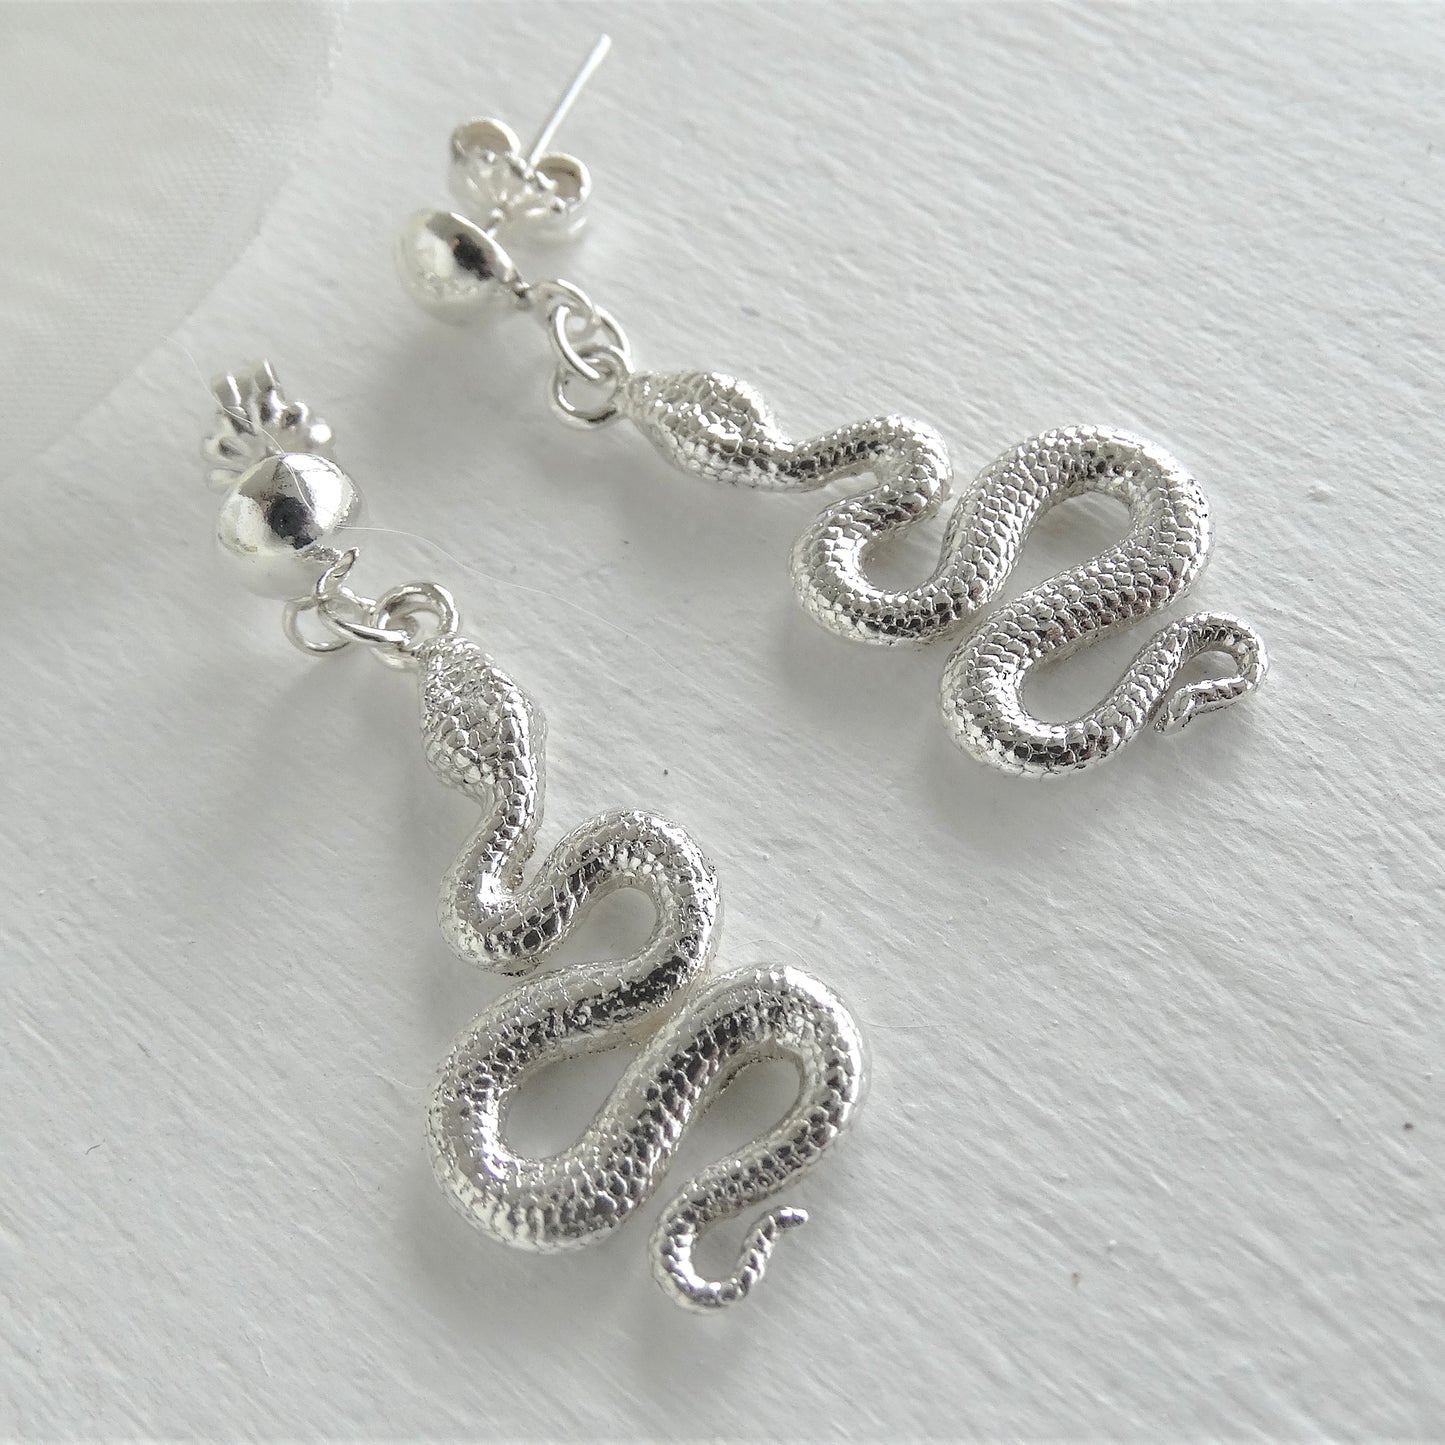 Aros de plata en forma de serpiente